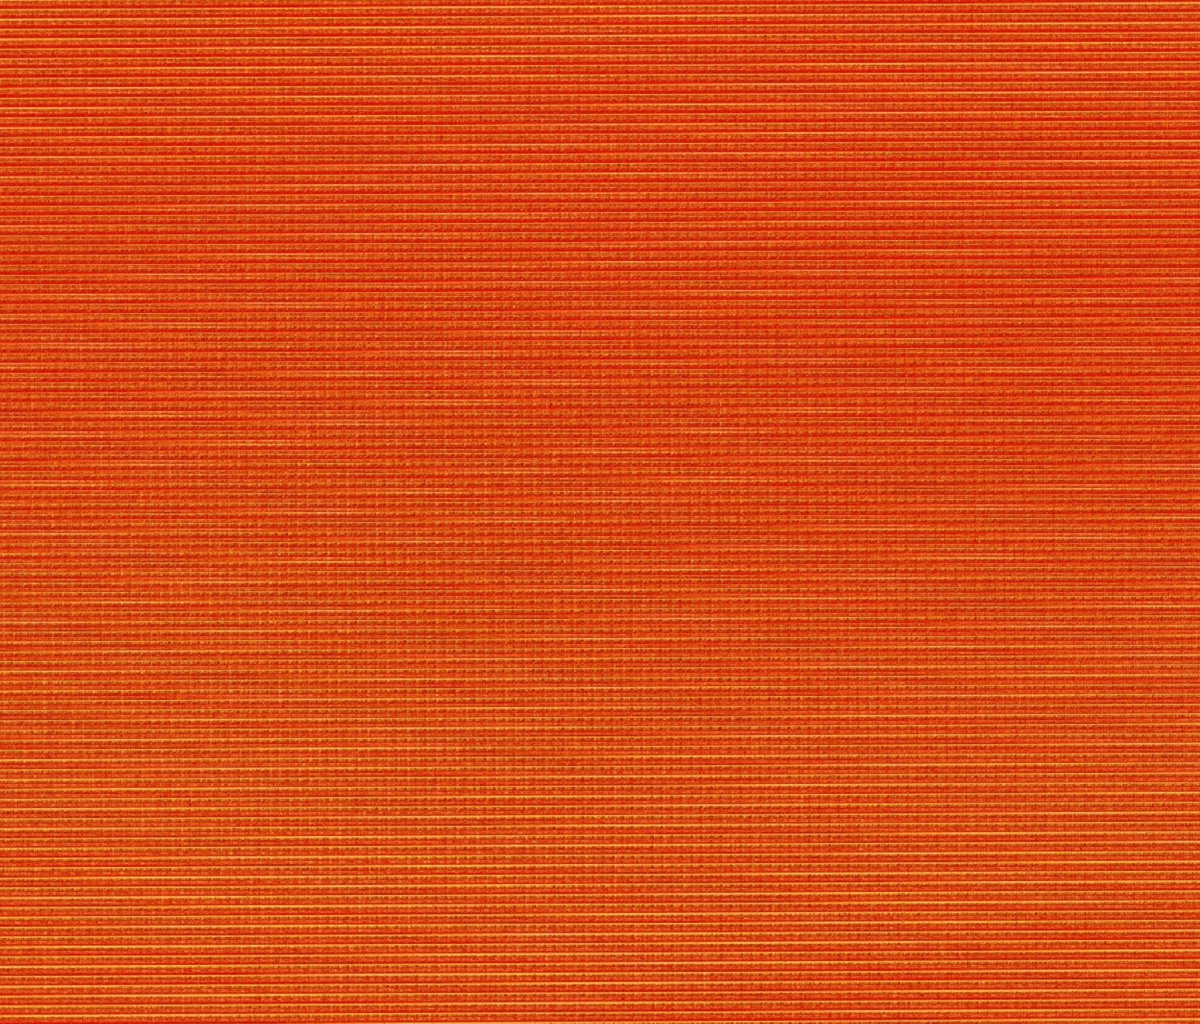 Das Orange texture Wallpaper 1200x1024